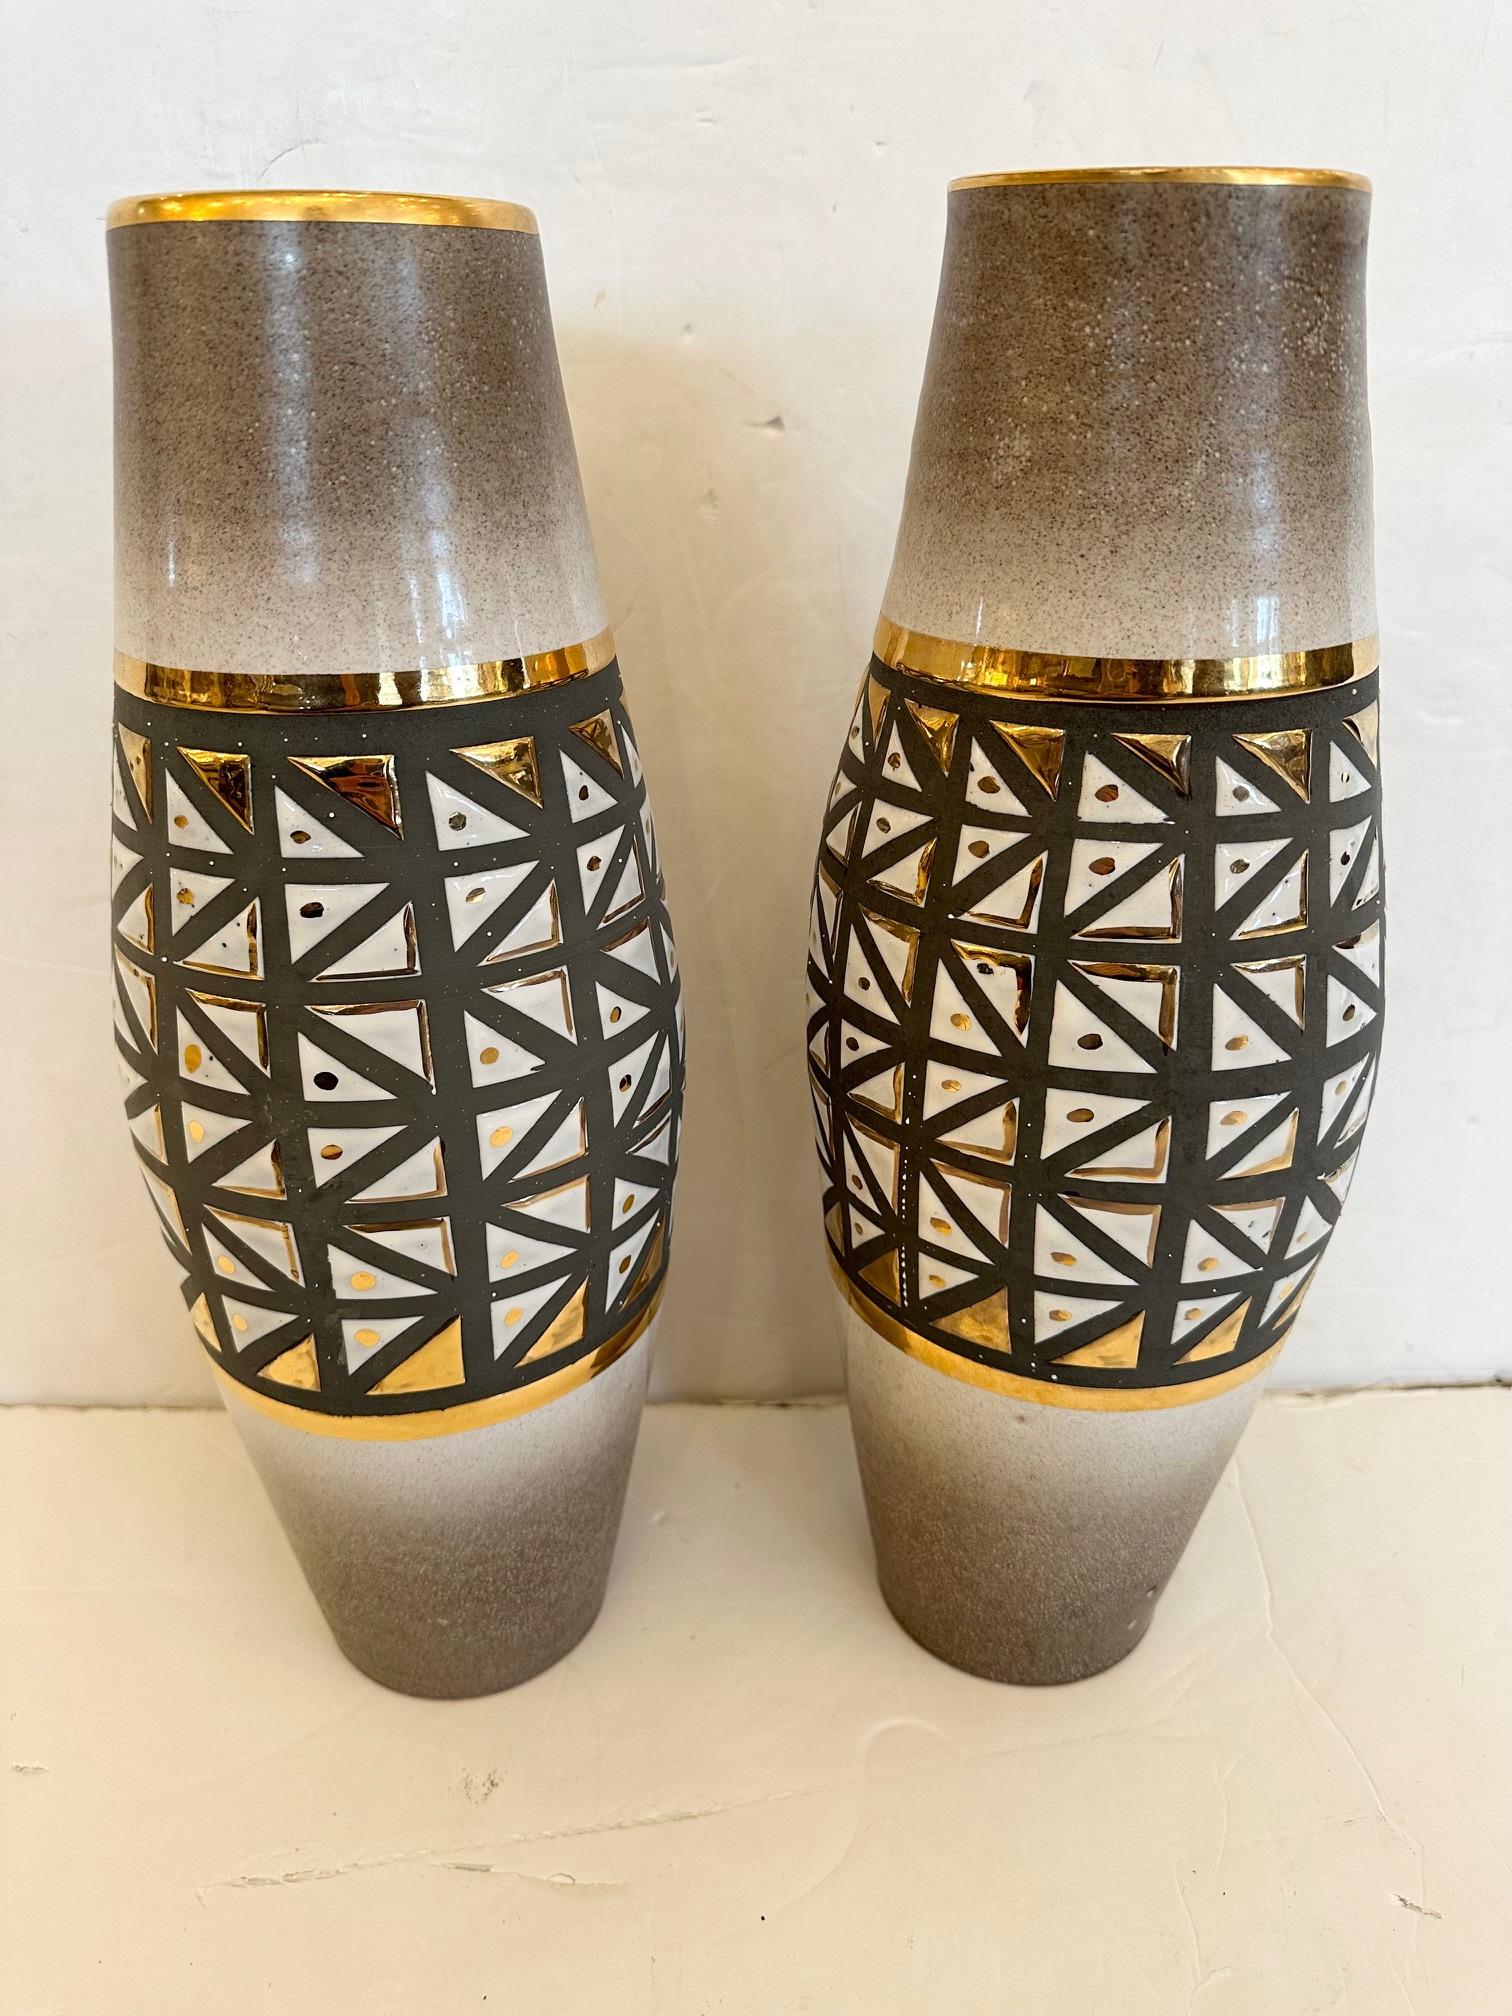 Magnifique paire de vases en poterie moderne du milieu du siècle, fabriqués à la main, présentant des formes géométriques grises et blanches avec des accents dorés.